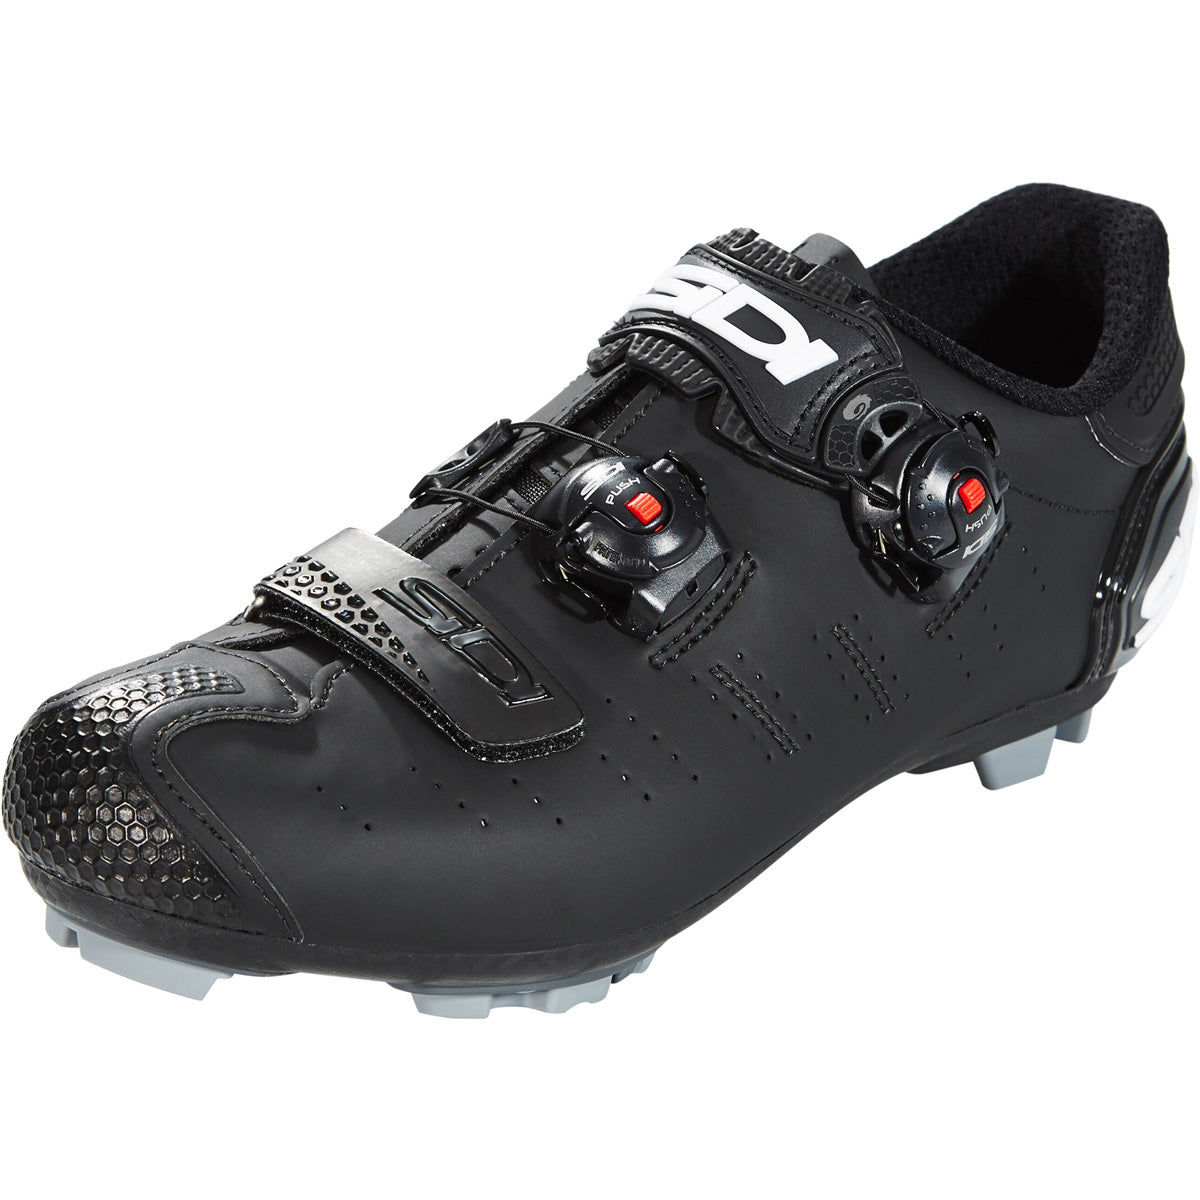 Sidi Dragon 5 Mountain Bike Shoes - Matte Black/Black